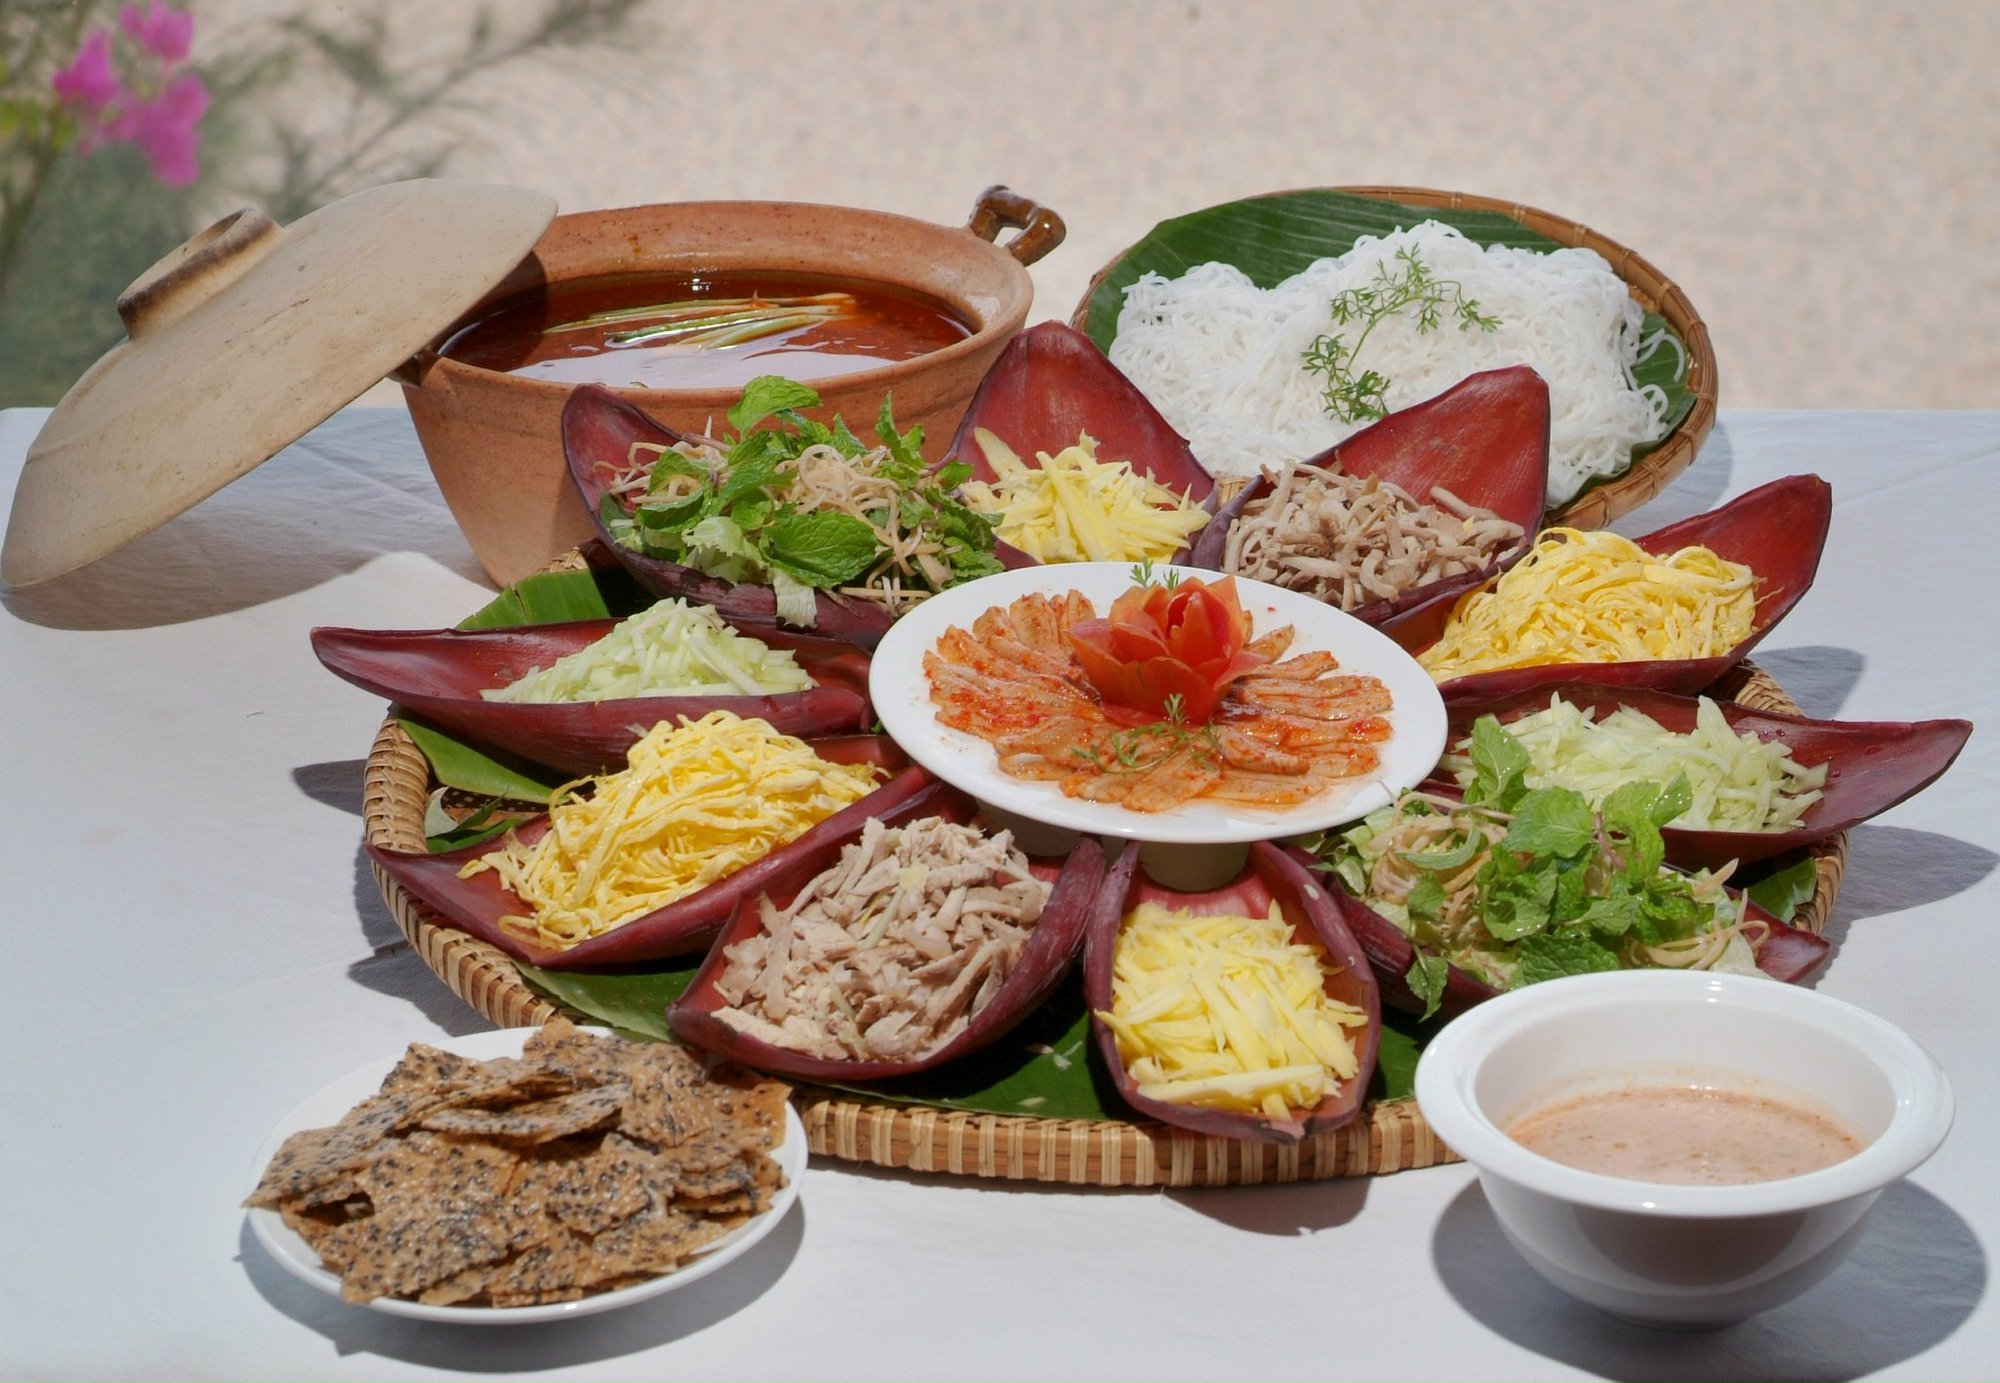 Món lẩu thả Phan Thiết có gì ngon mà khiến du khách đến Bình Thuận phải tìm ăn cho bằng được? - Ảnh 1.